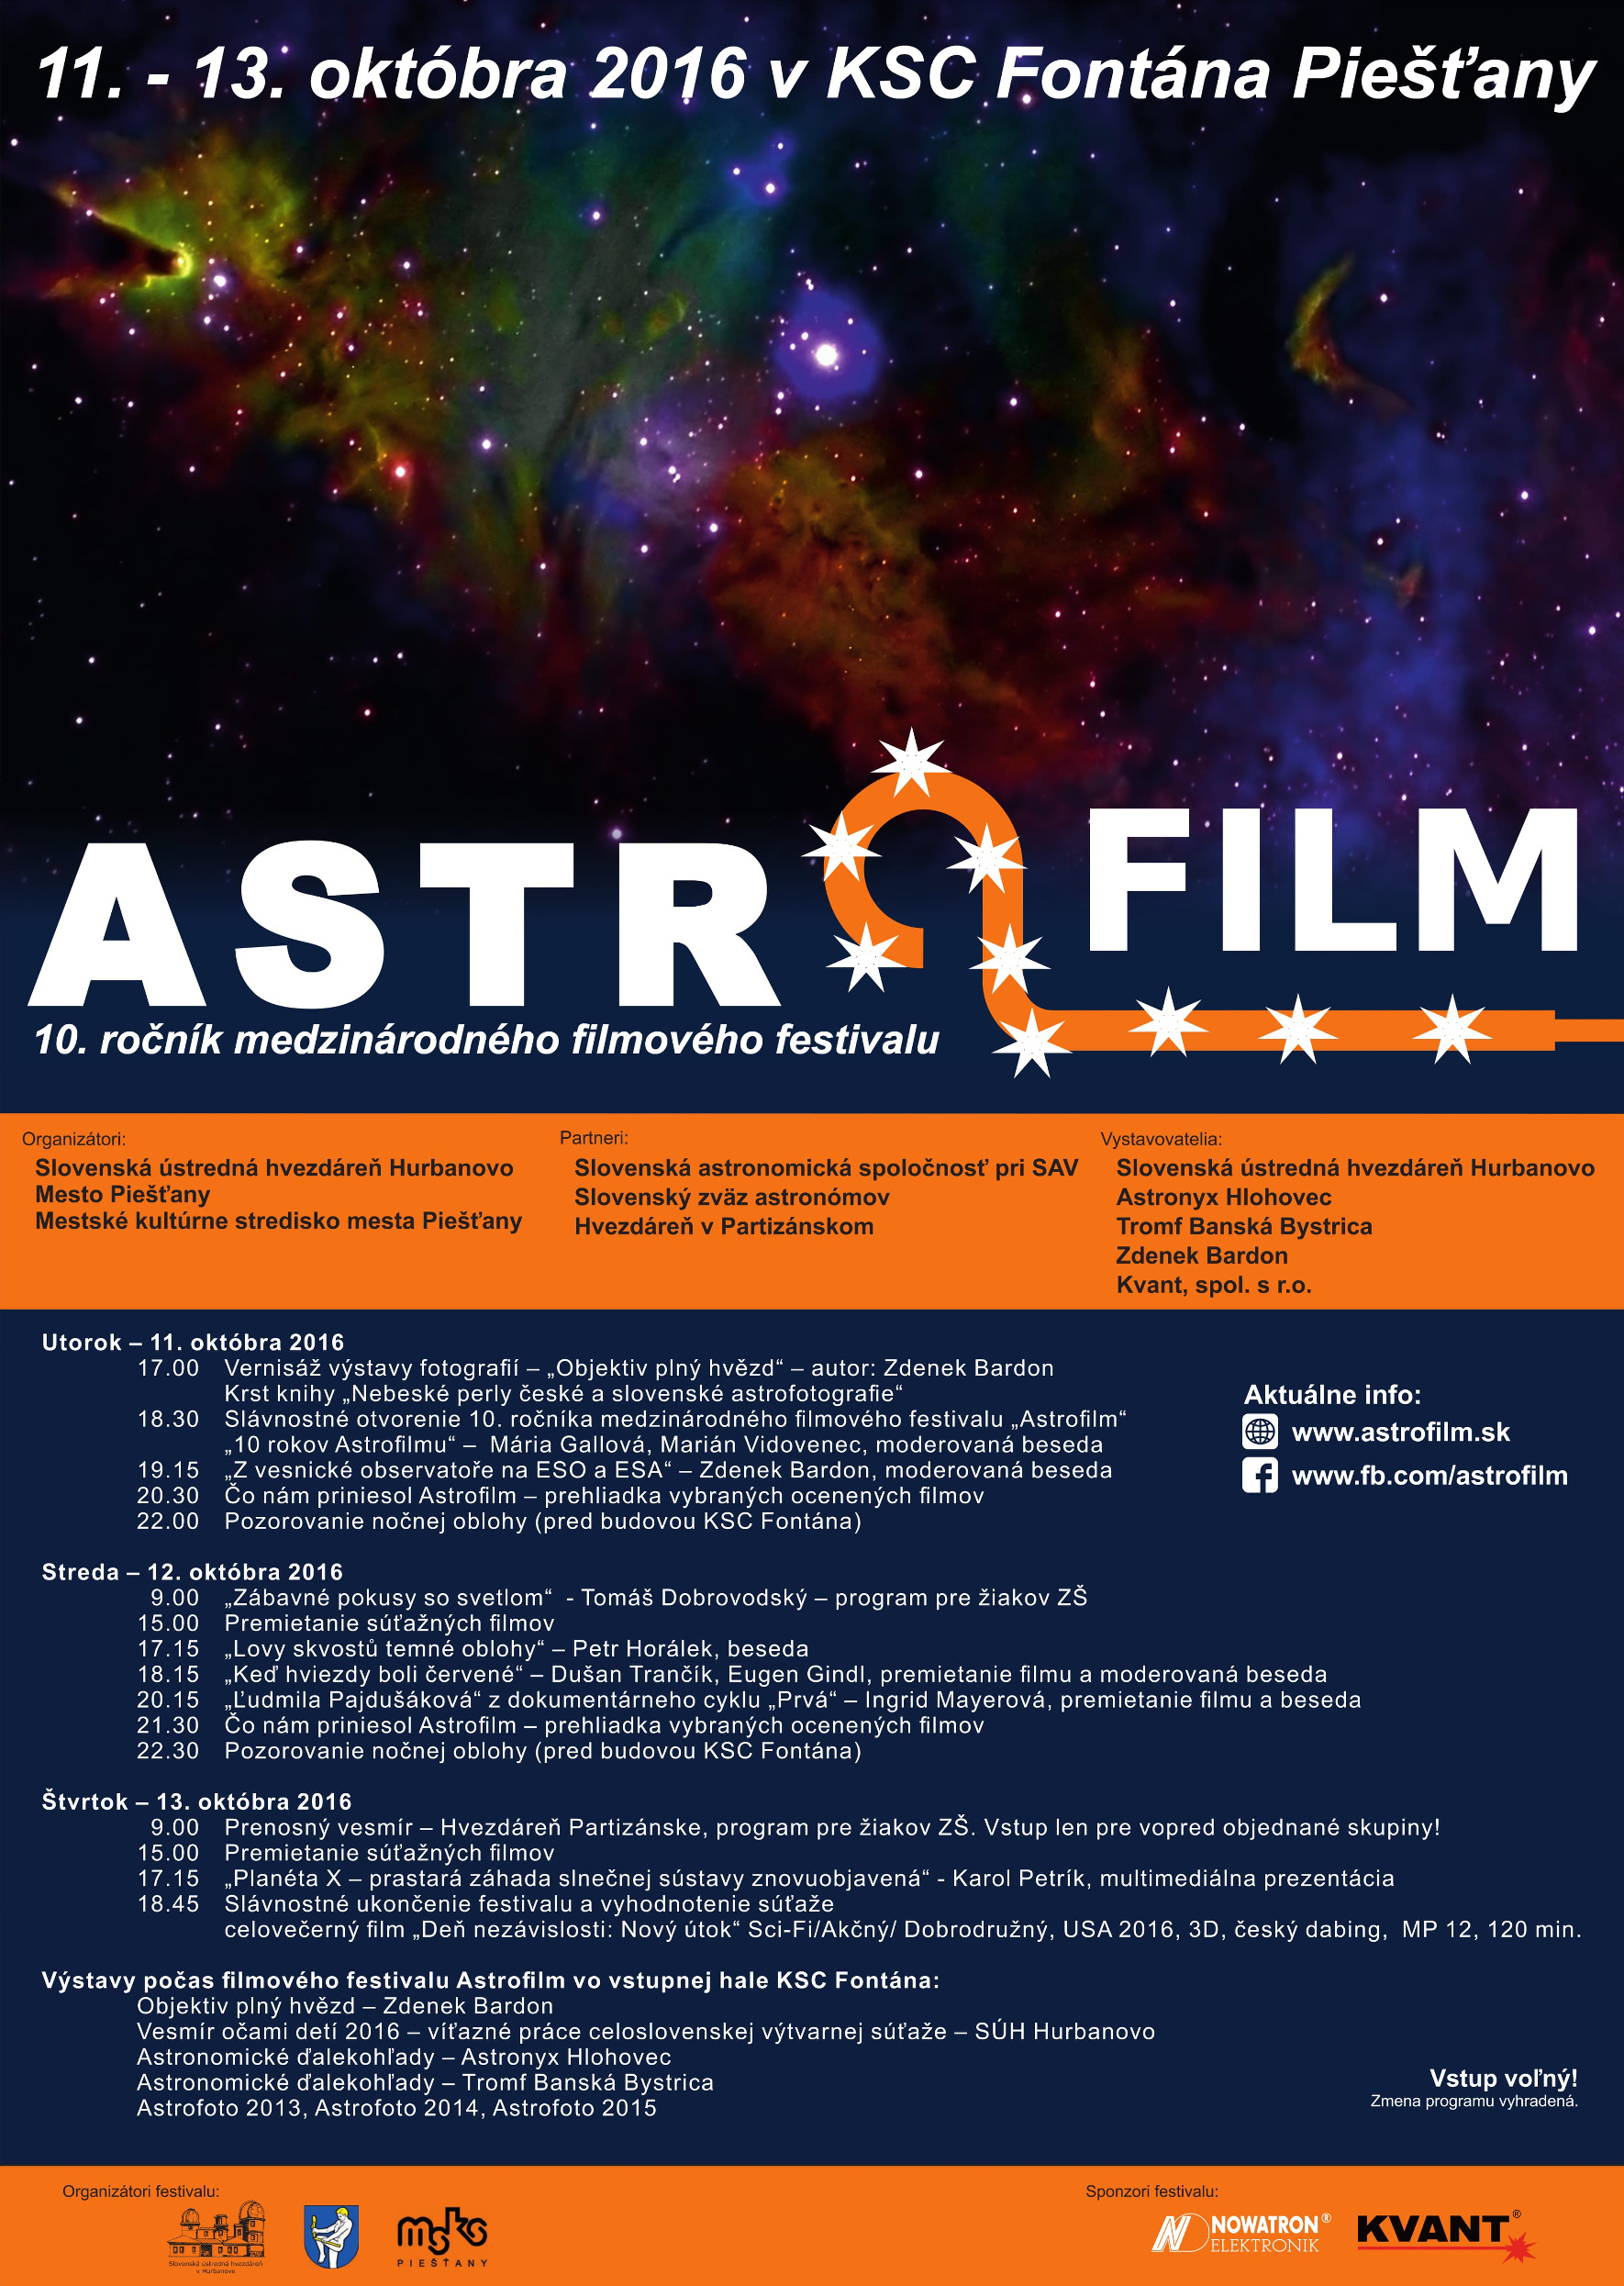 Obr.1: Program 10. ročníka medzinárodného filmového festivalu Astrofilm